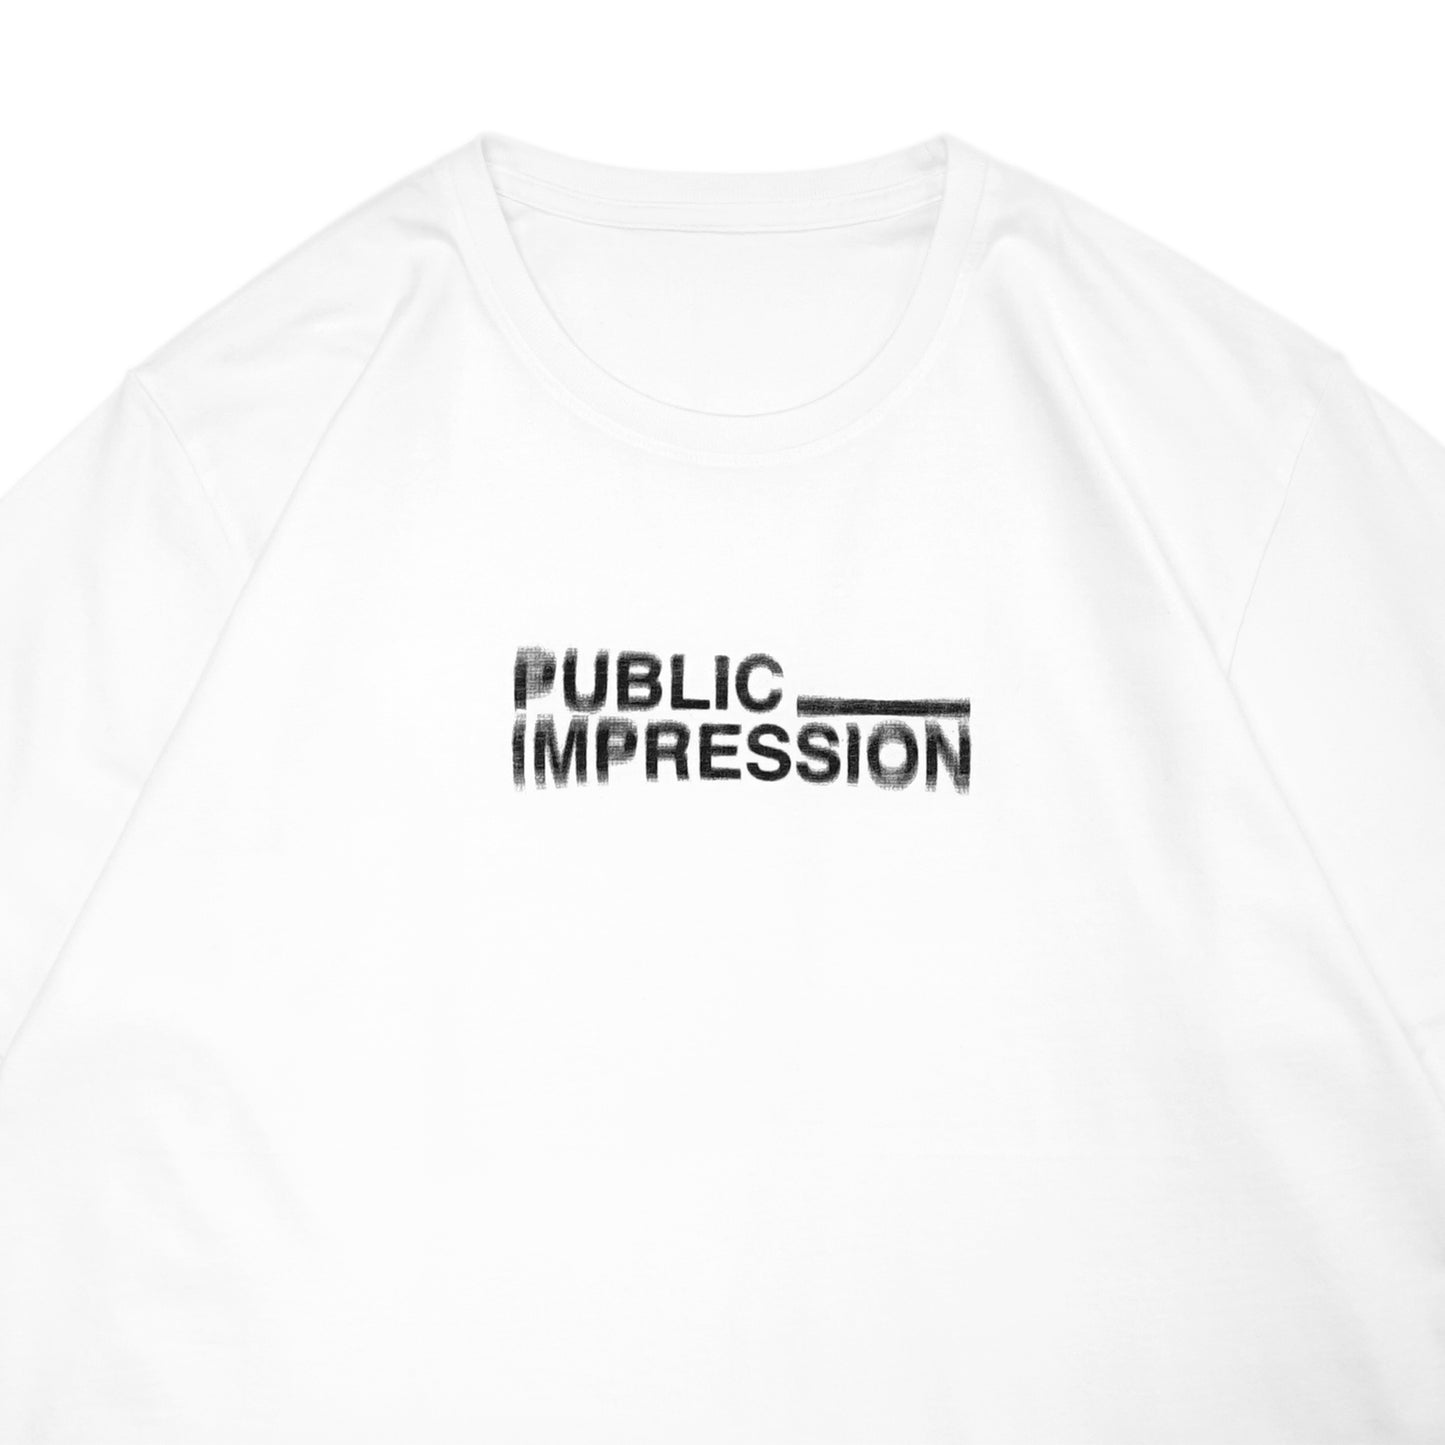 PUBLIC IMPRESSION - Blurred Logo T-Shirt/White